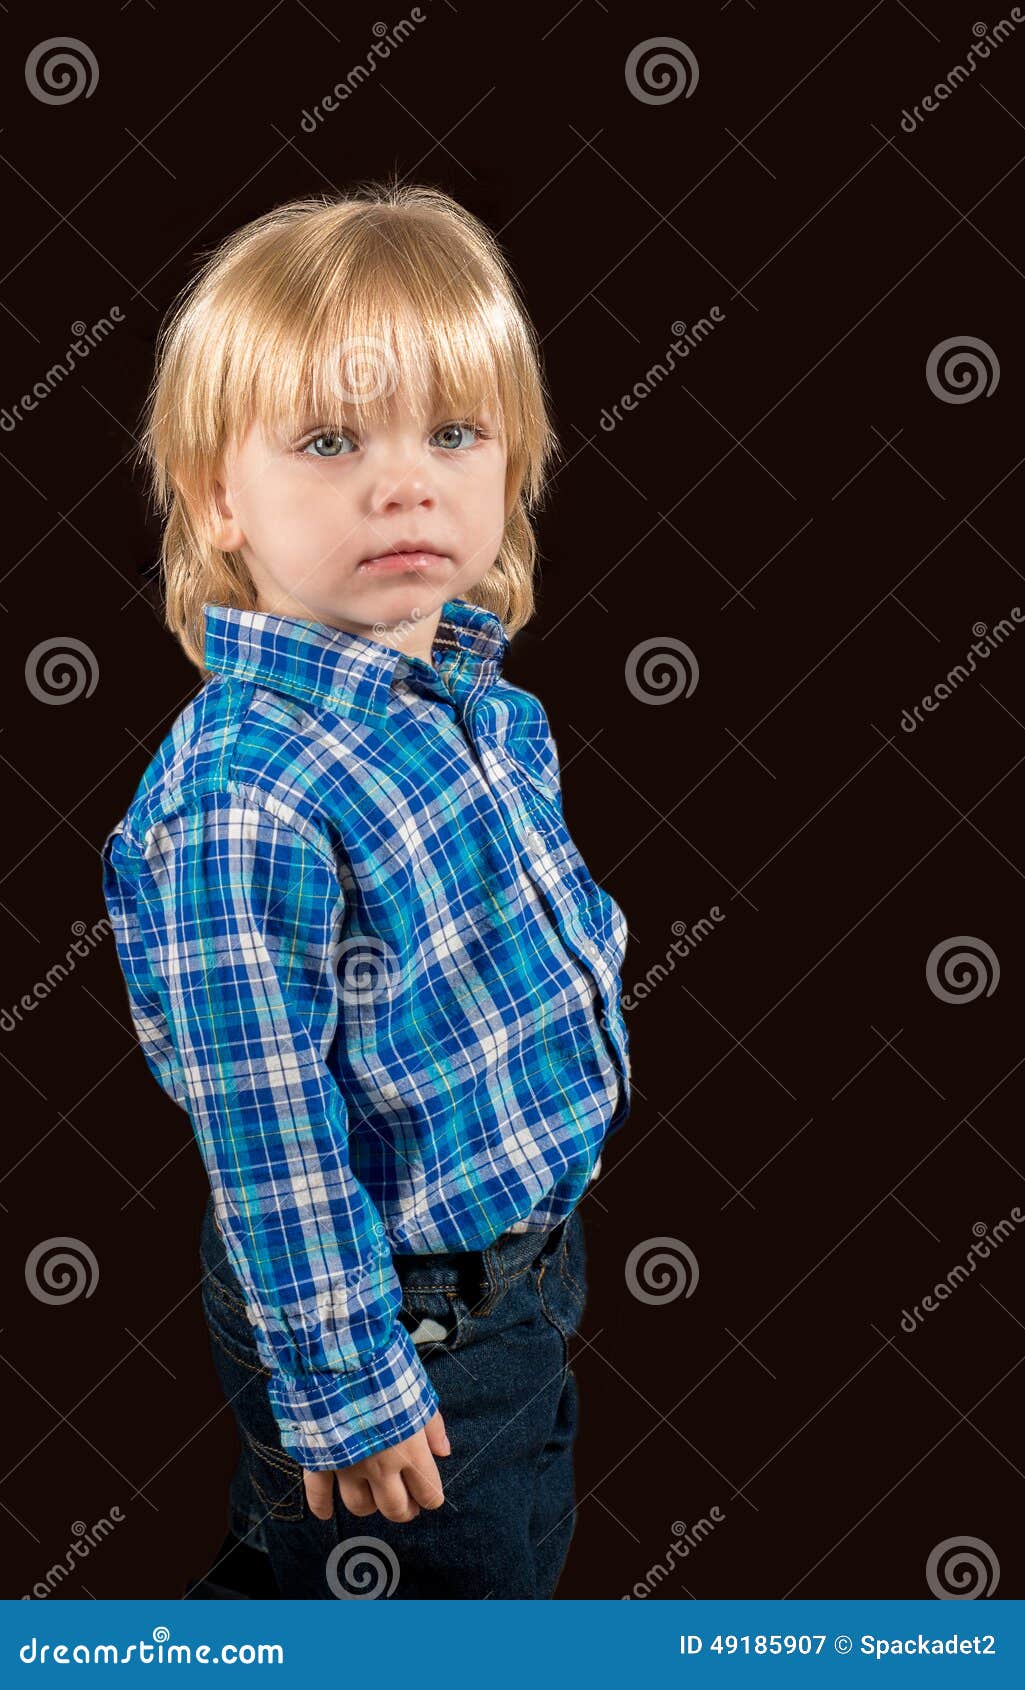 solemn little boy against a dark background